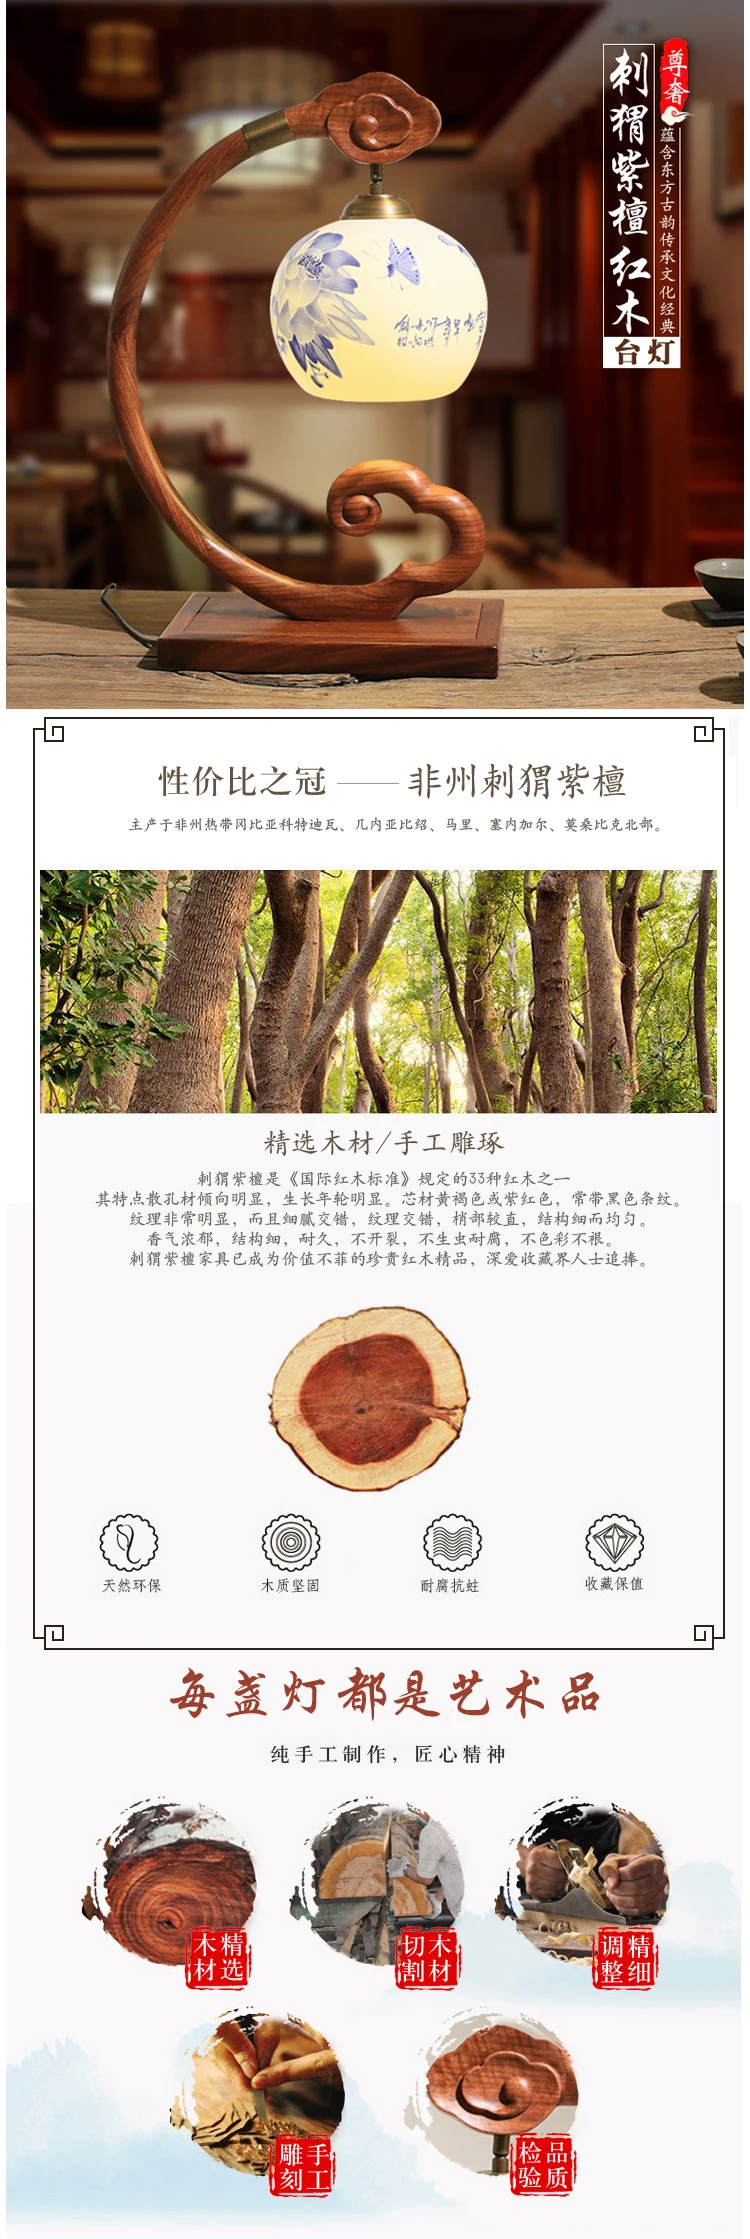 Qiseyuncai Новинка 2019 года китайский Redwood настольная лампа Винтаж палисандр твердые деревянная Гостиная Кабинет Керамика Бесплатная доставка